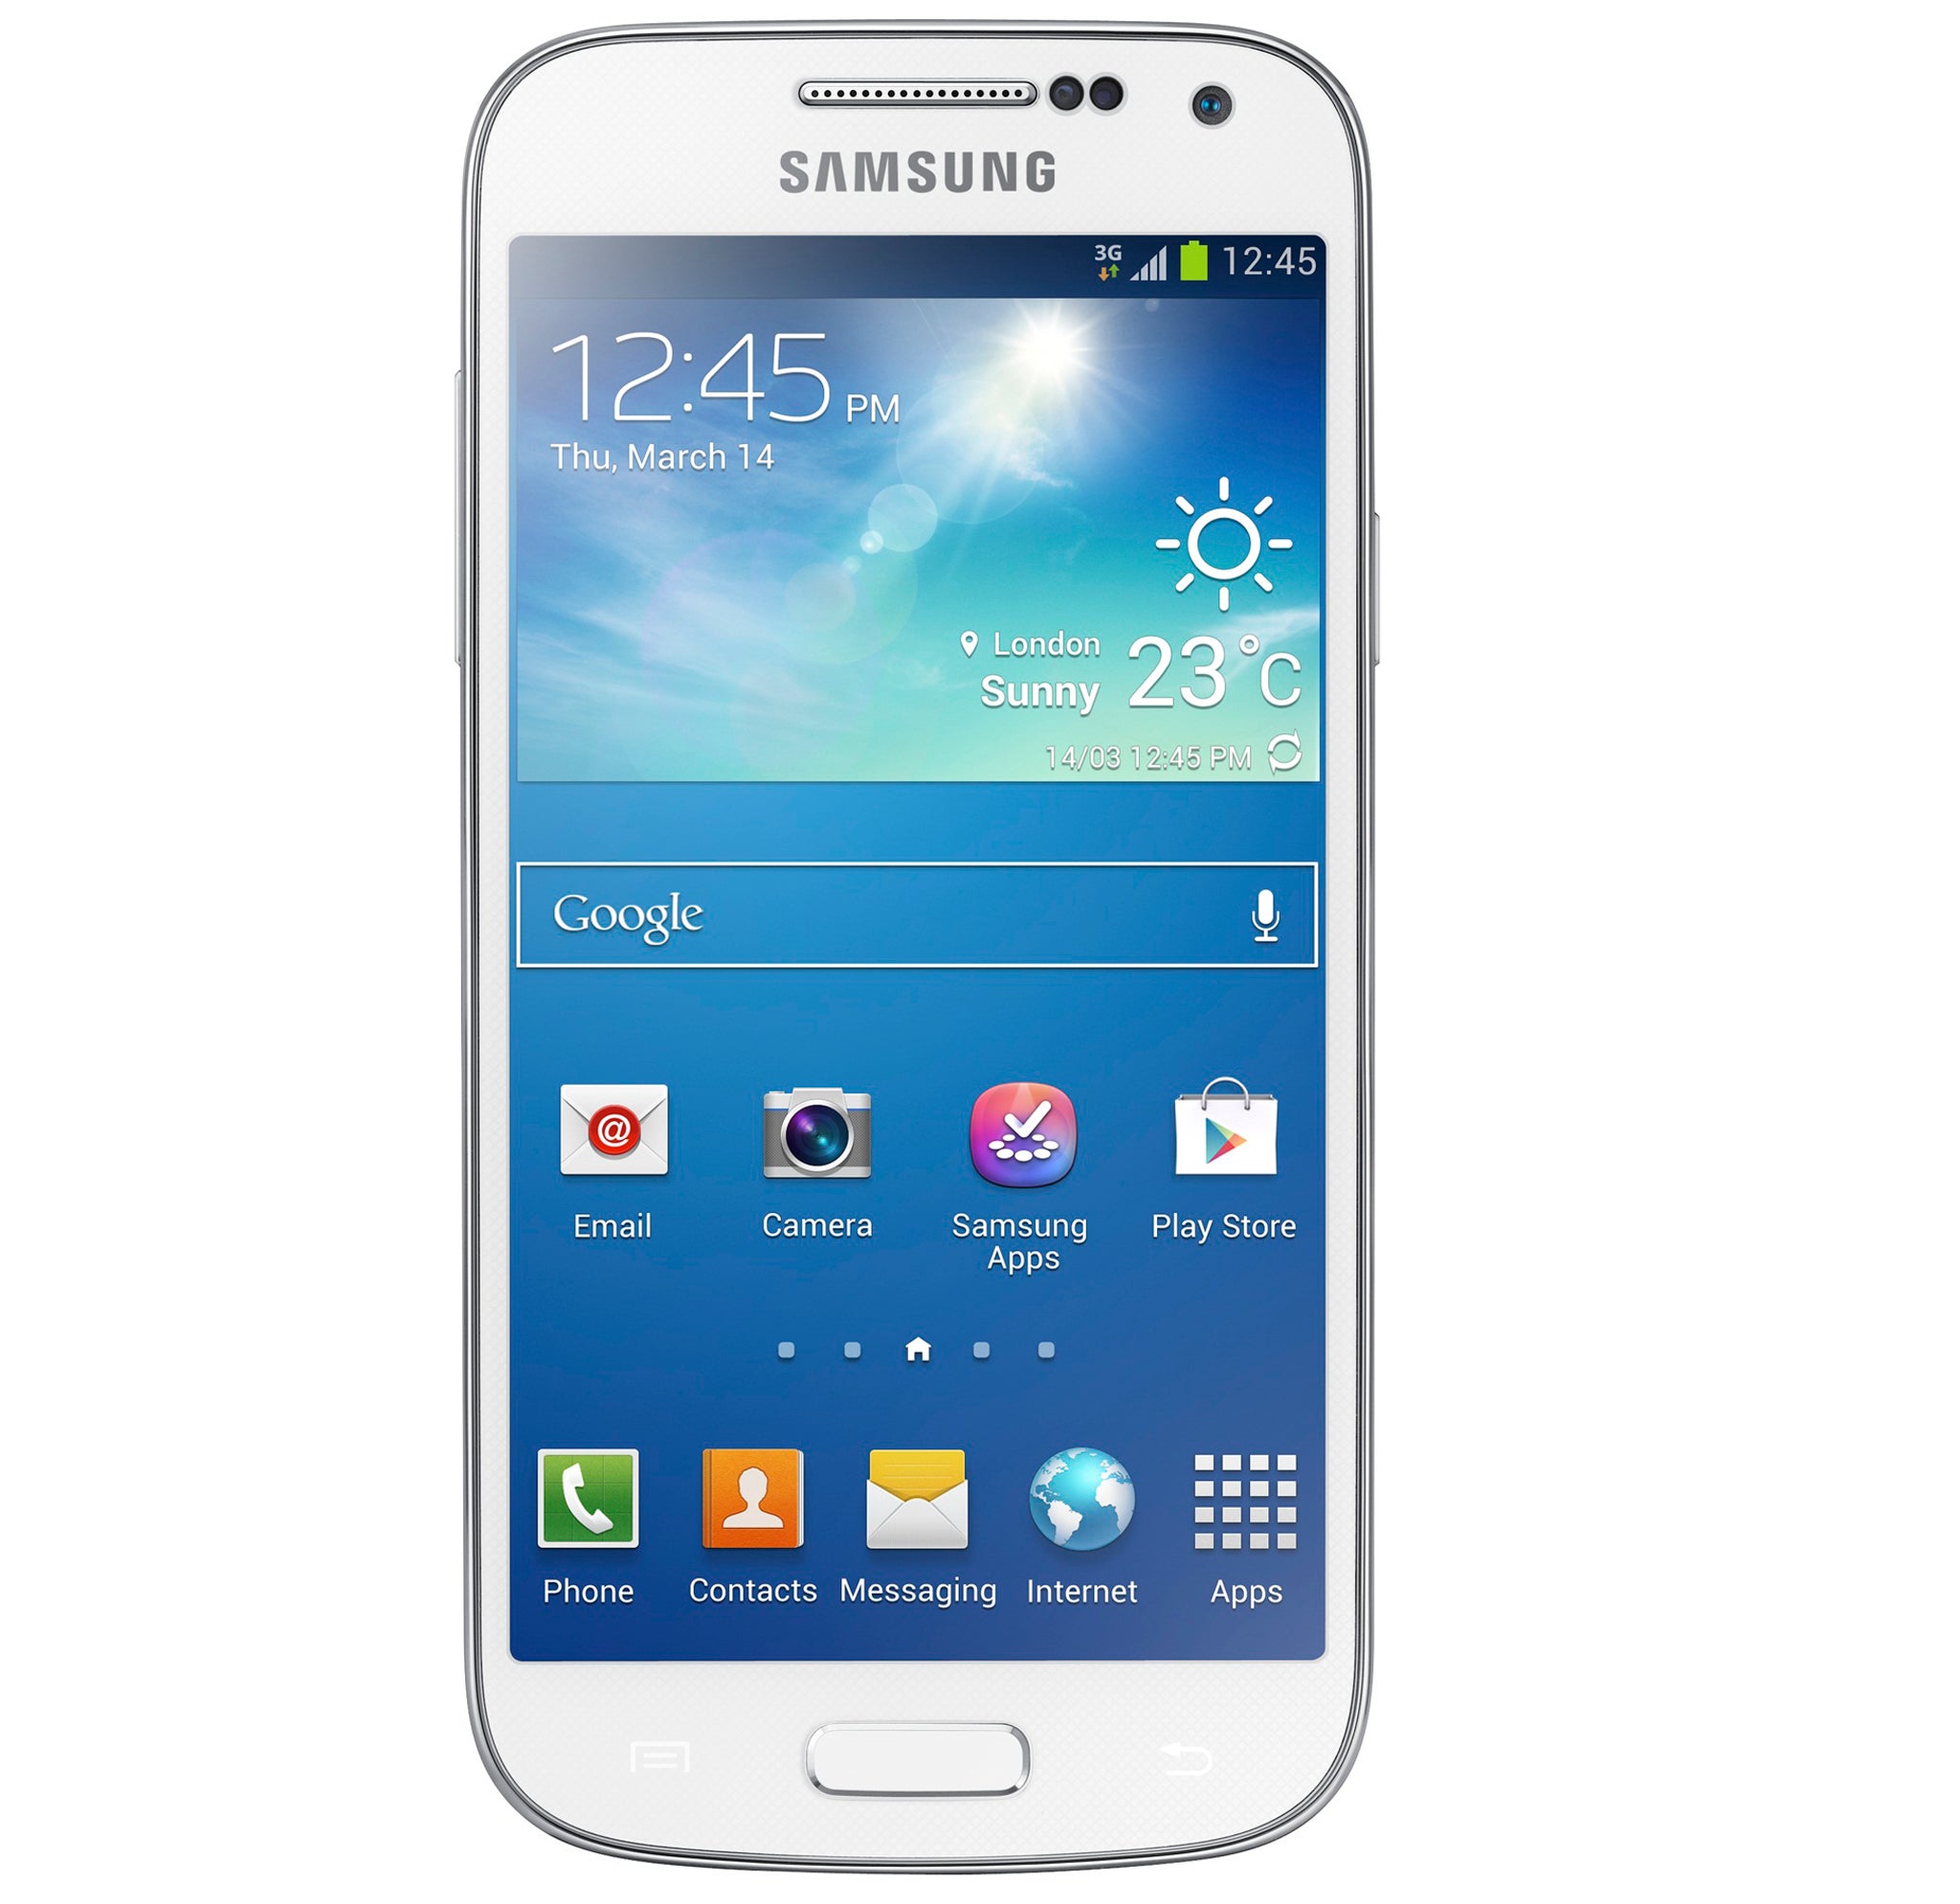 The new Samsung Galaxy S4 Mini in white